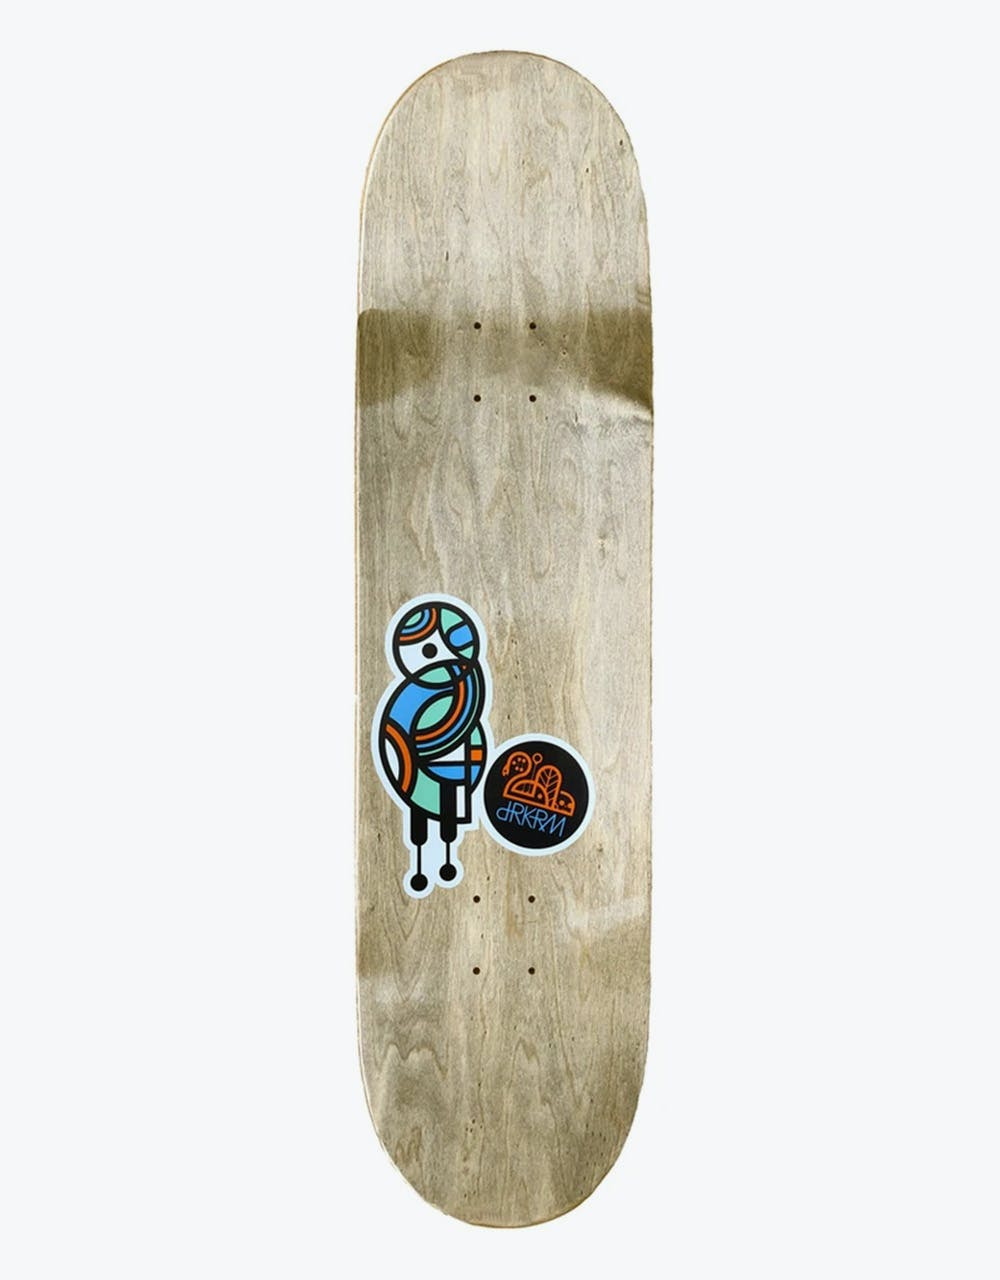 Darkroom Iron Lung Skateboard Deck - 8.75"